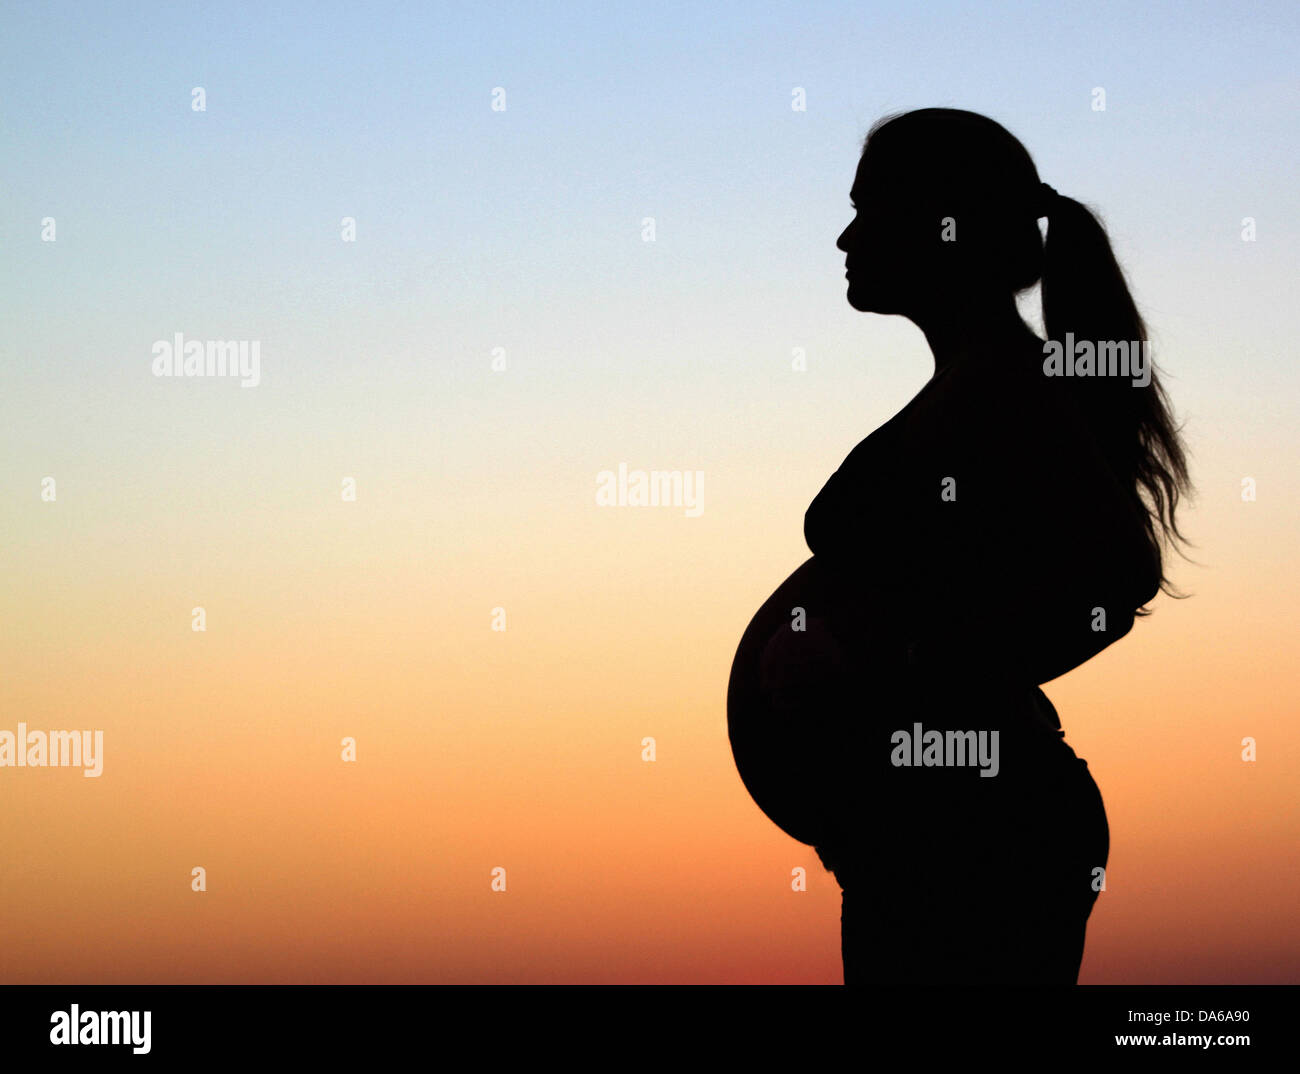 Un portrait silhouette d'une femme enceinte debout devant un ciel bleu et orange chaud Banque D'Images